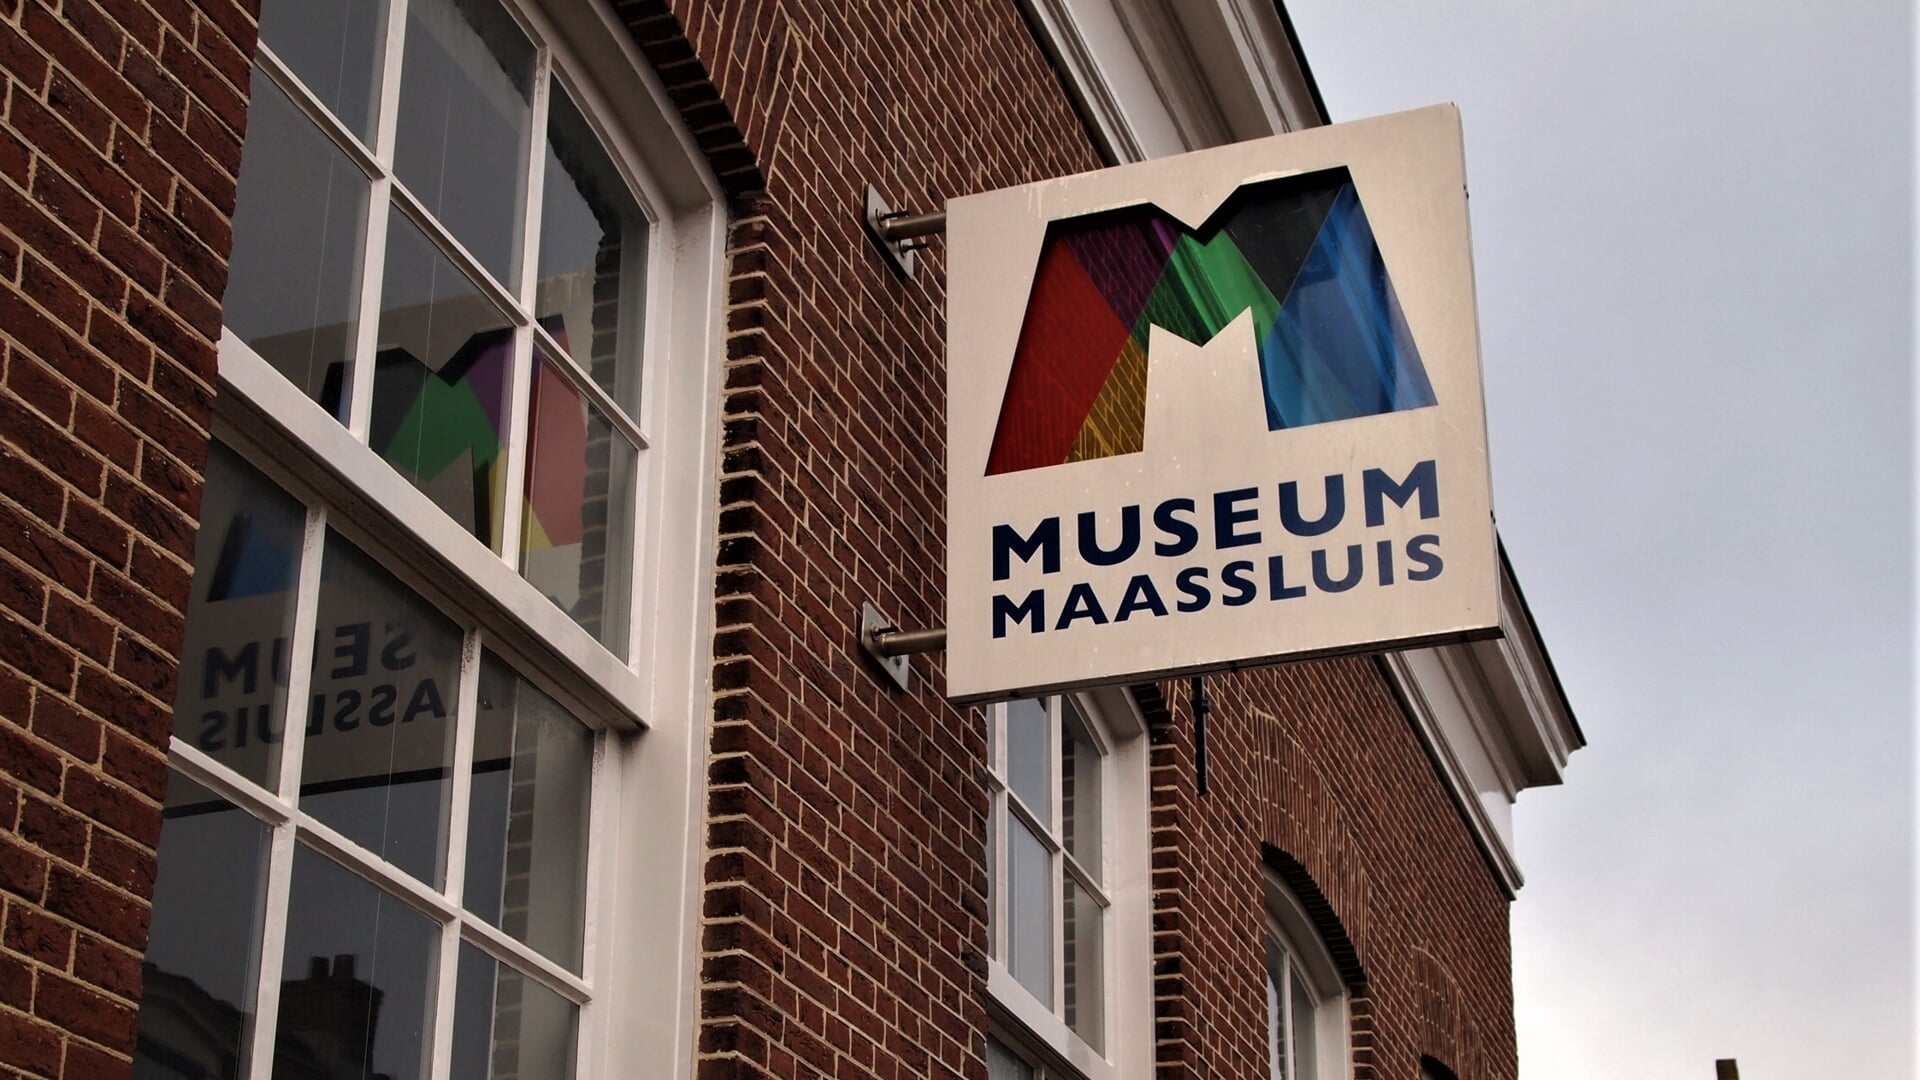 "Naar onze opvatting laat het bestuur van het Museum Maassluis vele kansen liggen", aldus de VVM